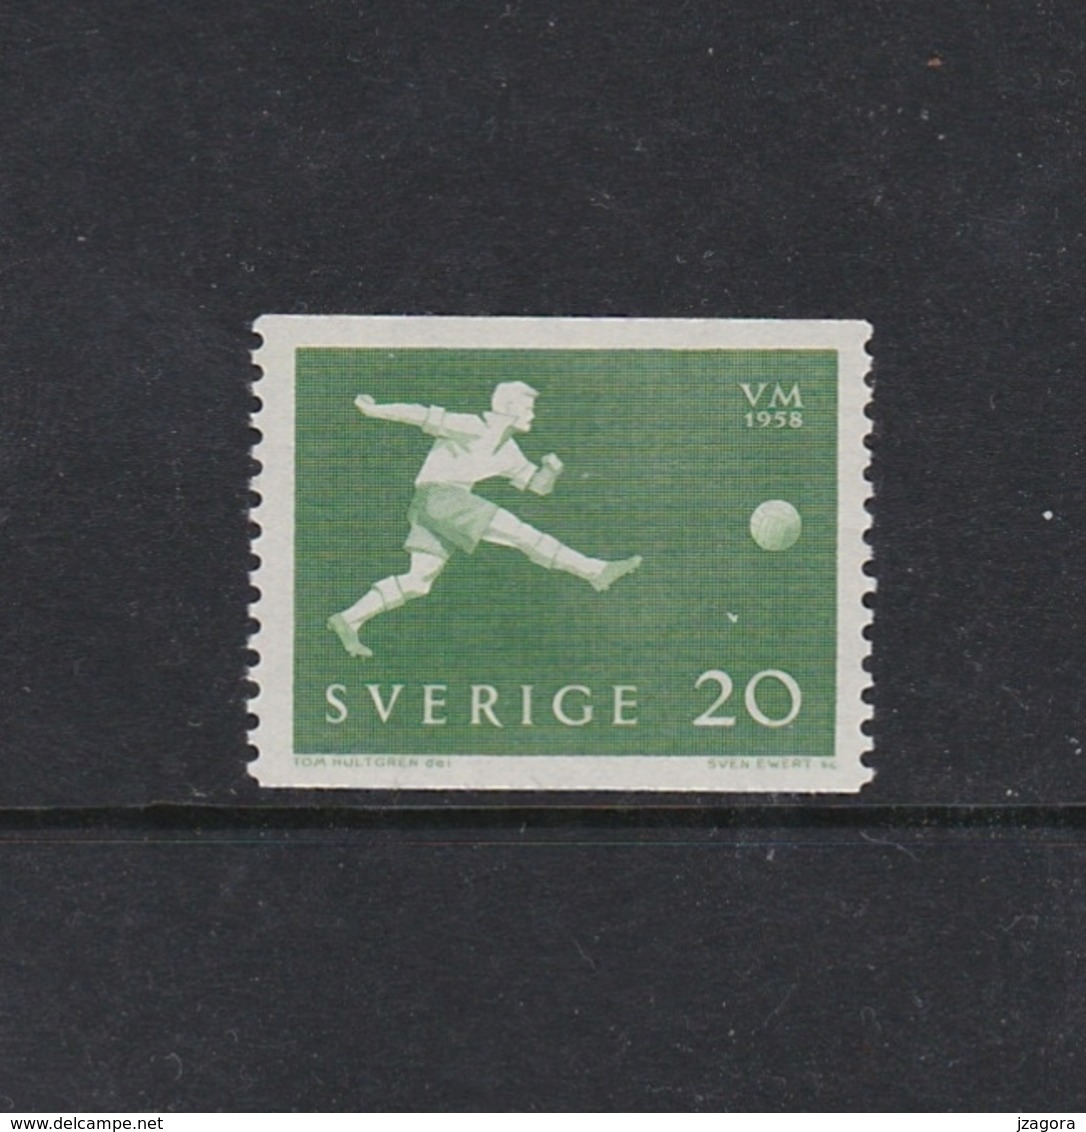 SOCCER FOOTBALL WORLD CHAMPIONSHIP - MUNDIAL 1958 - SWEDEN SCHWEDEN SUEDE MI 439 A MNH - 1958 – Suecia